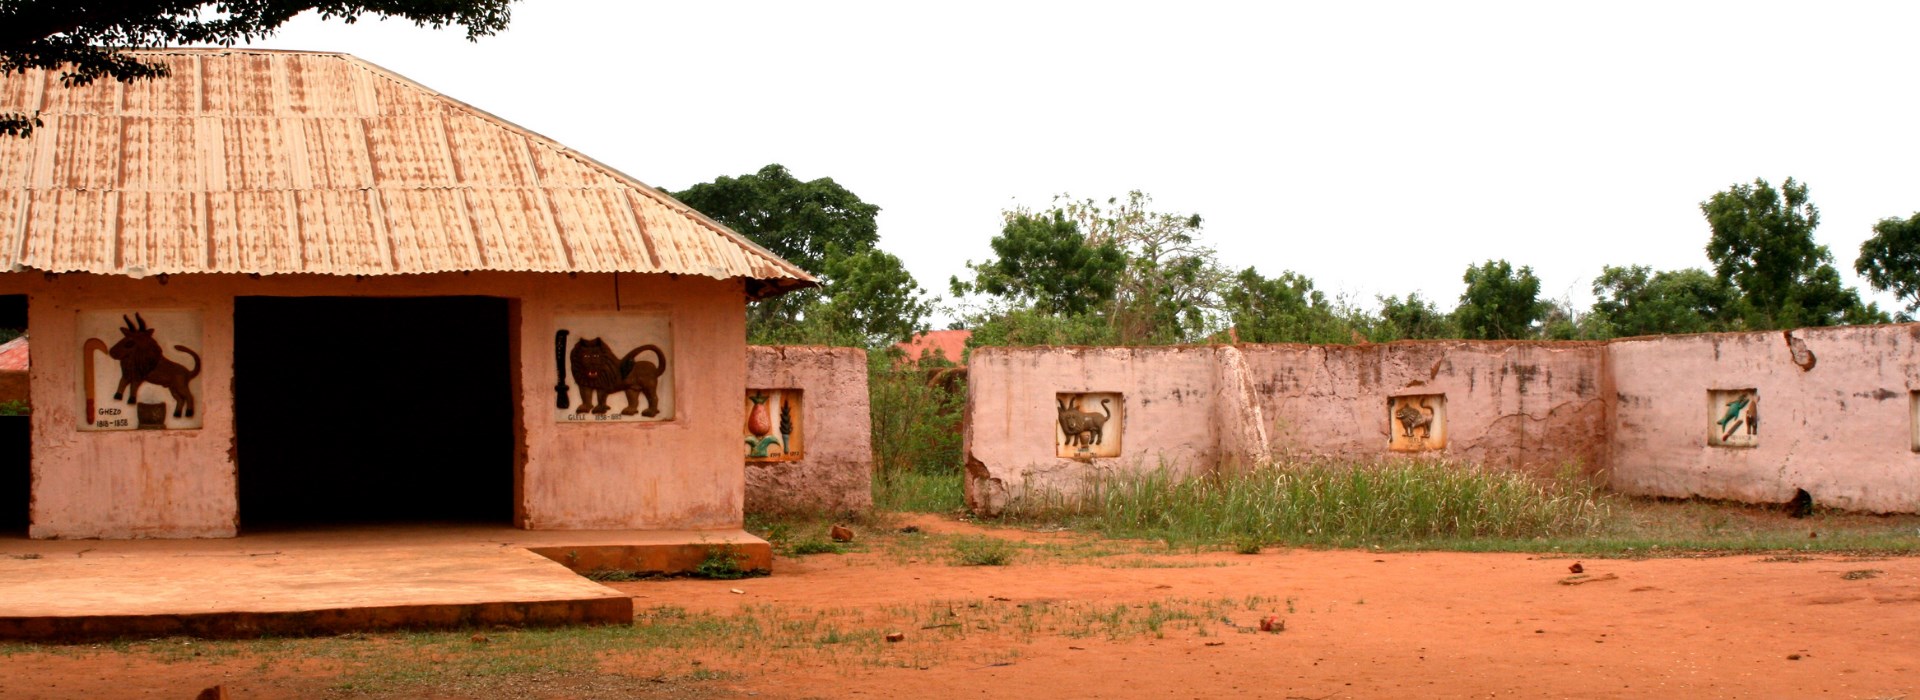 Visiter Abomey - Benin